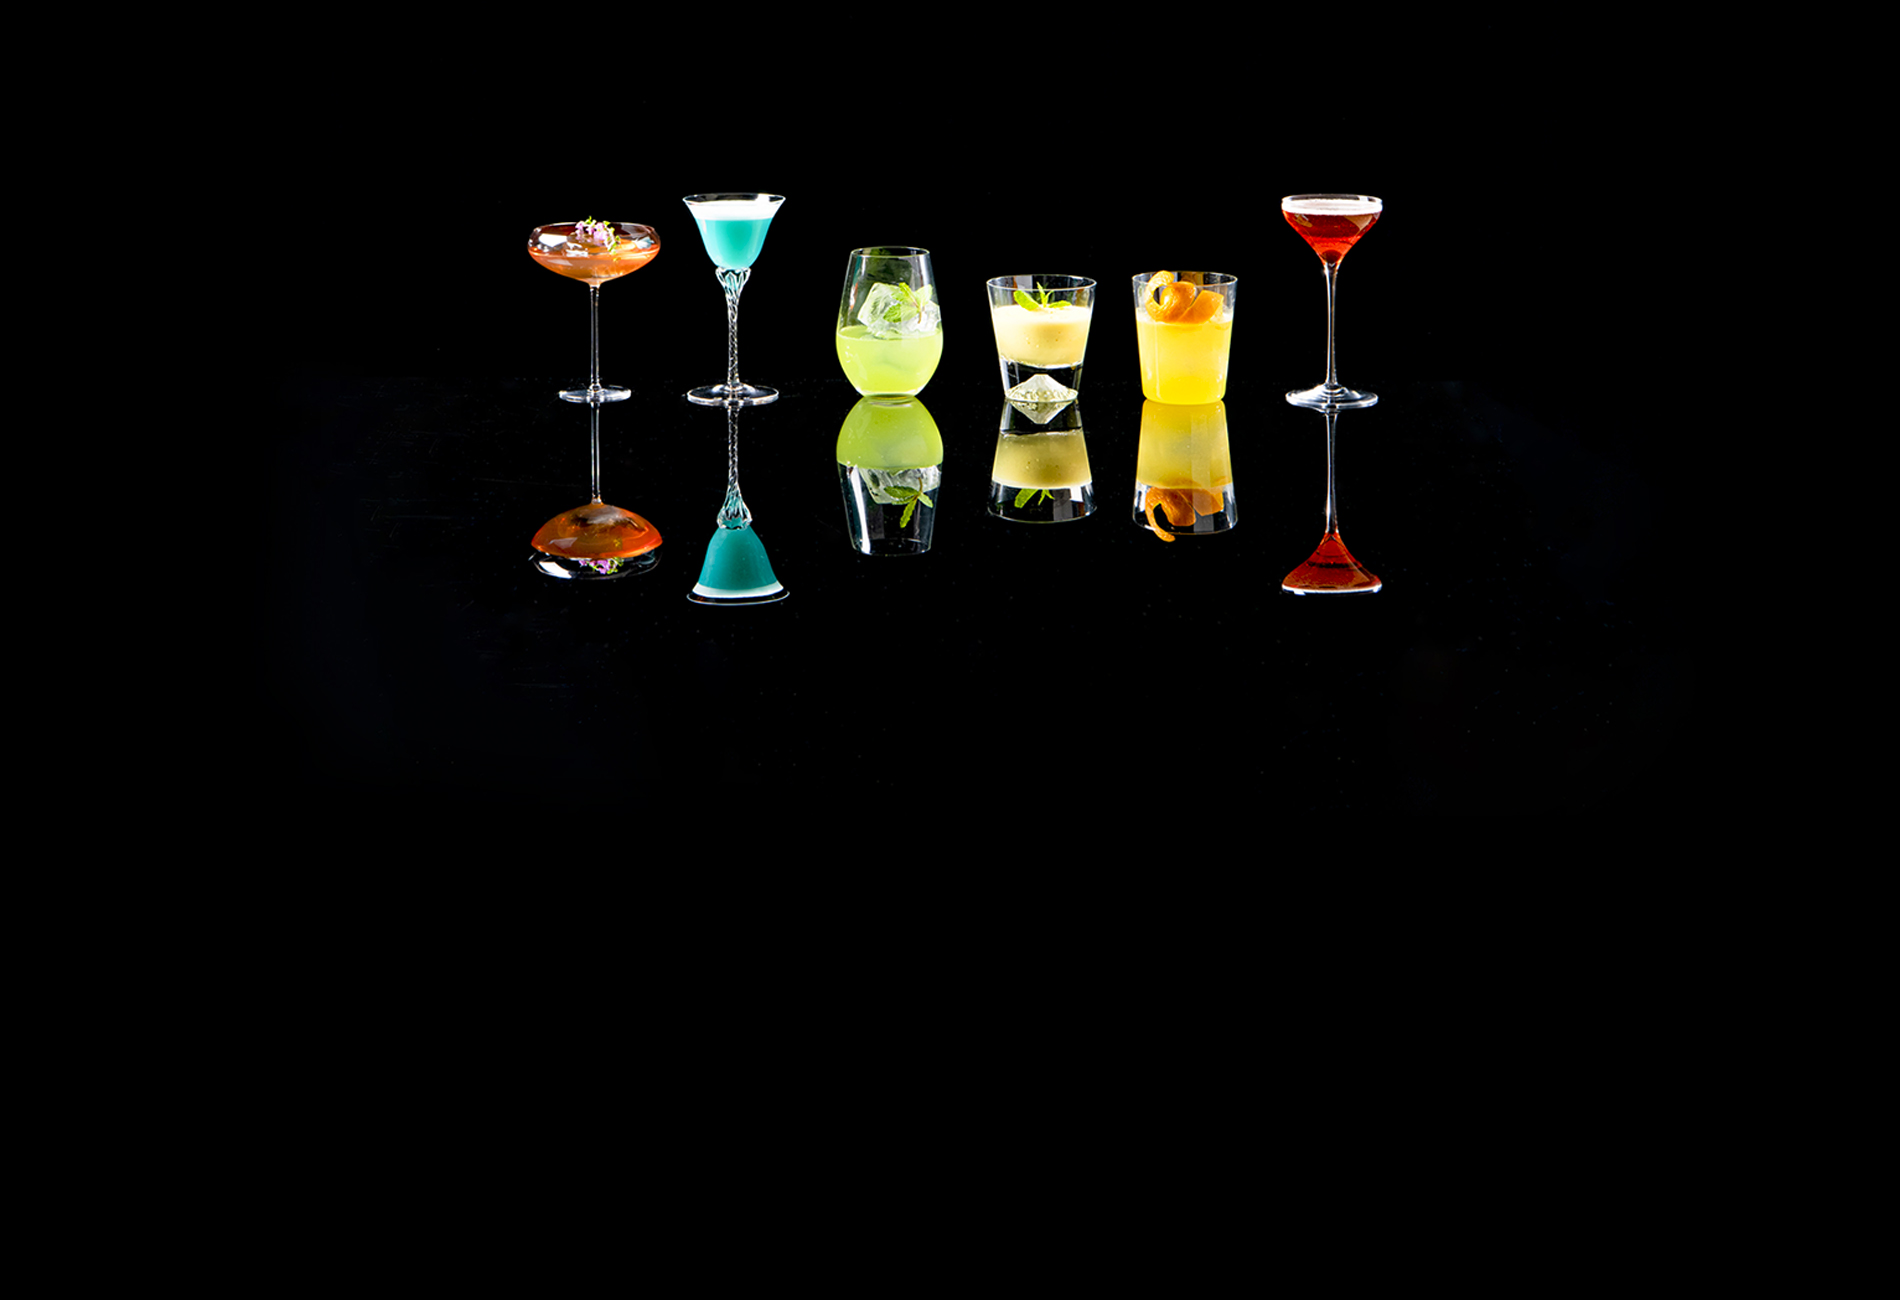 Six Cocktails